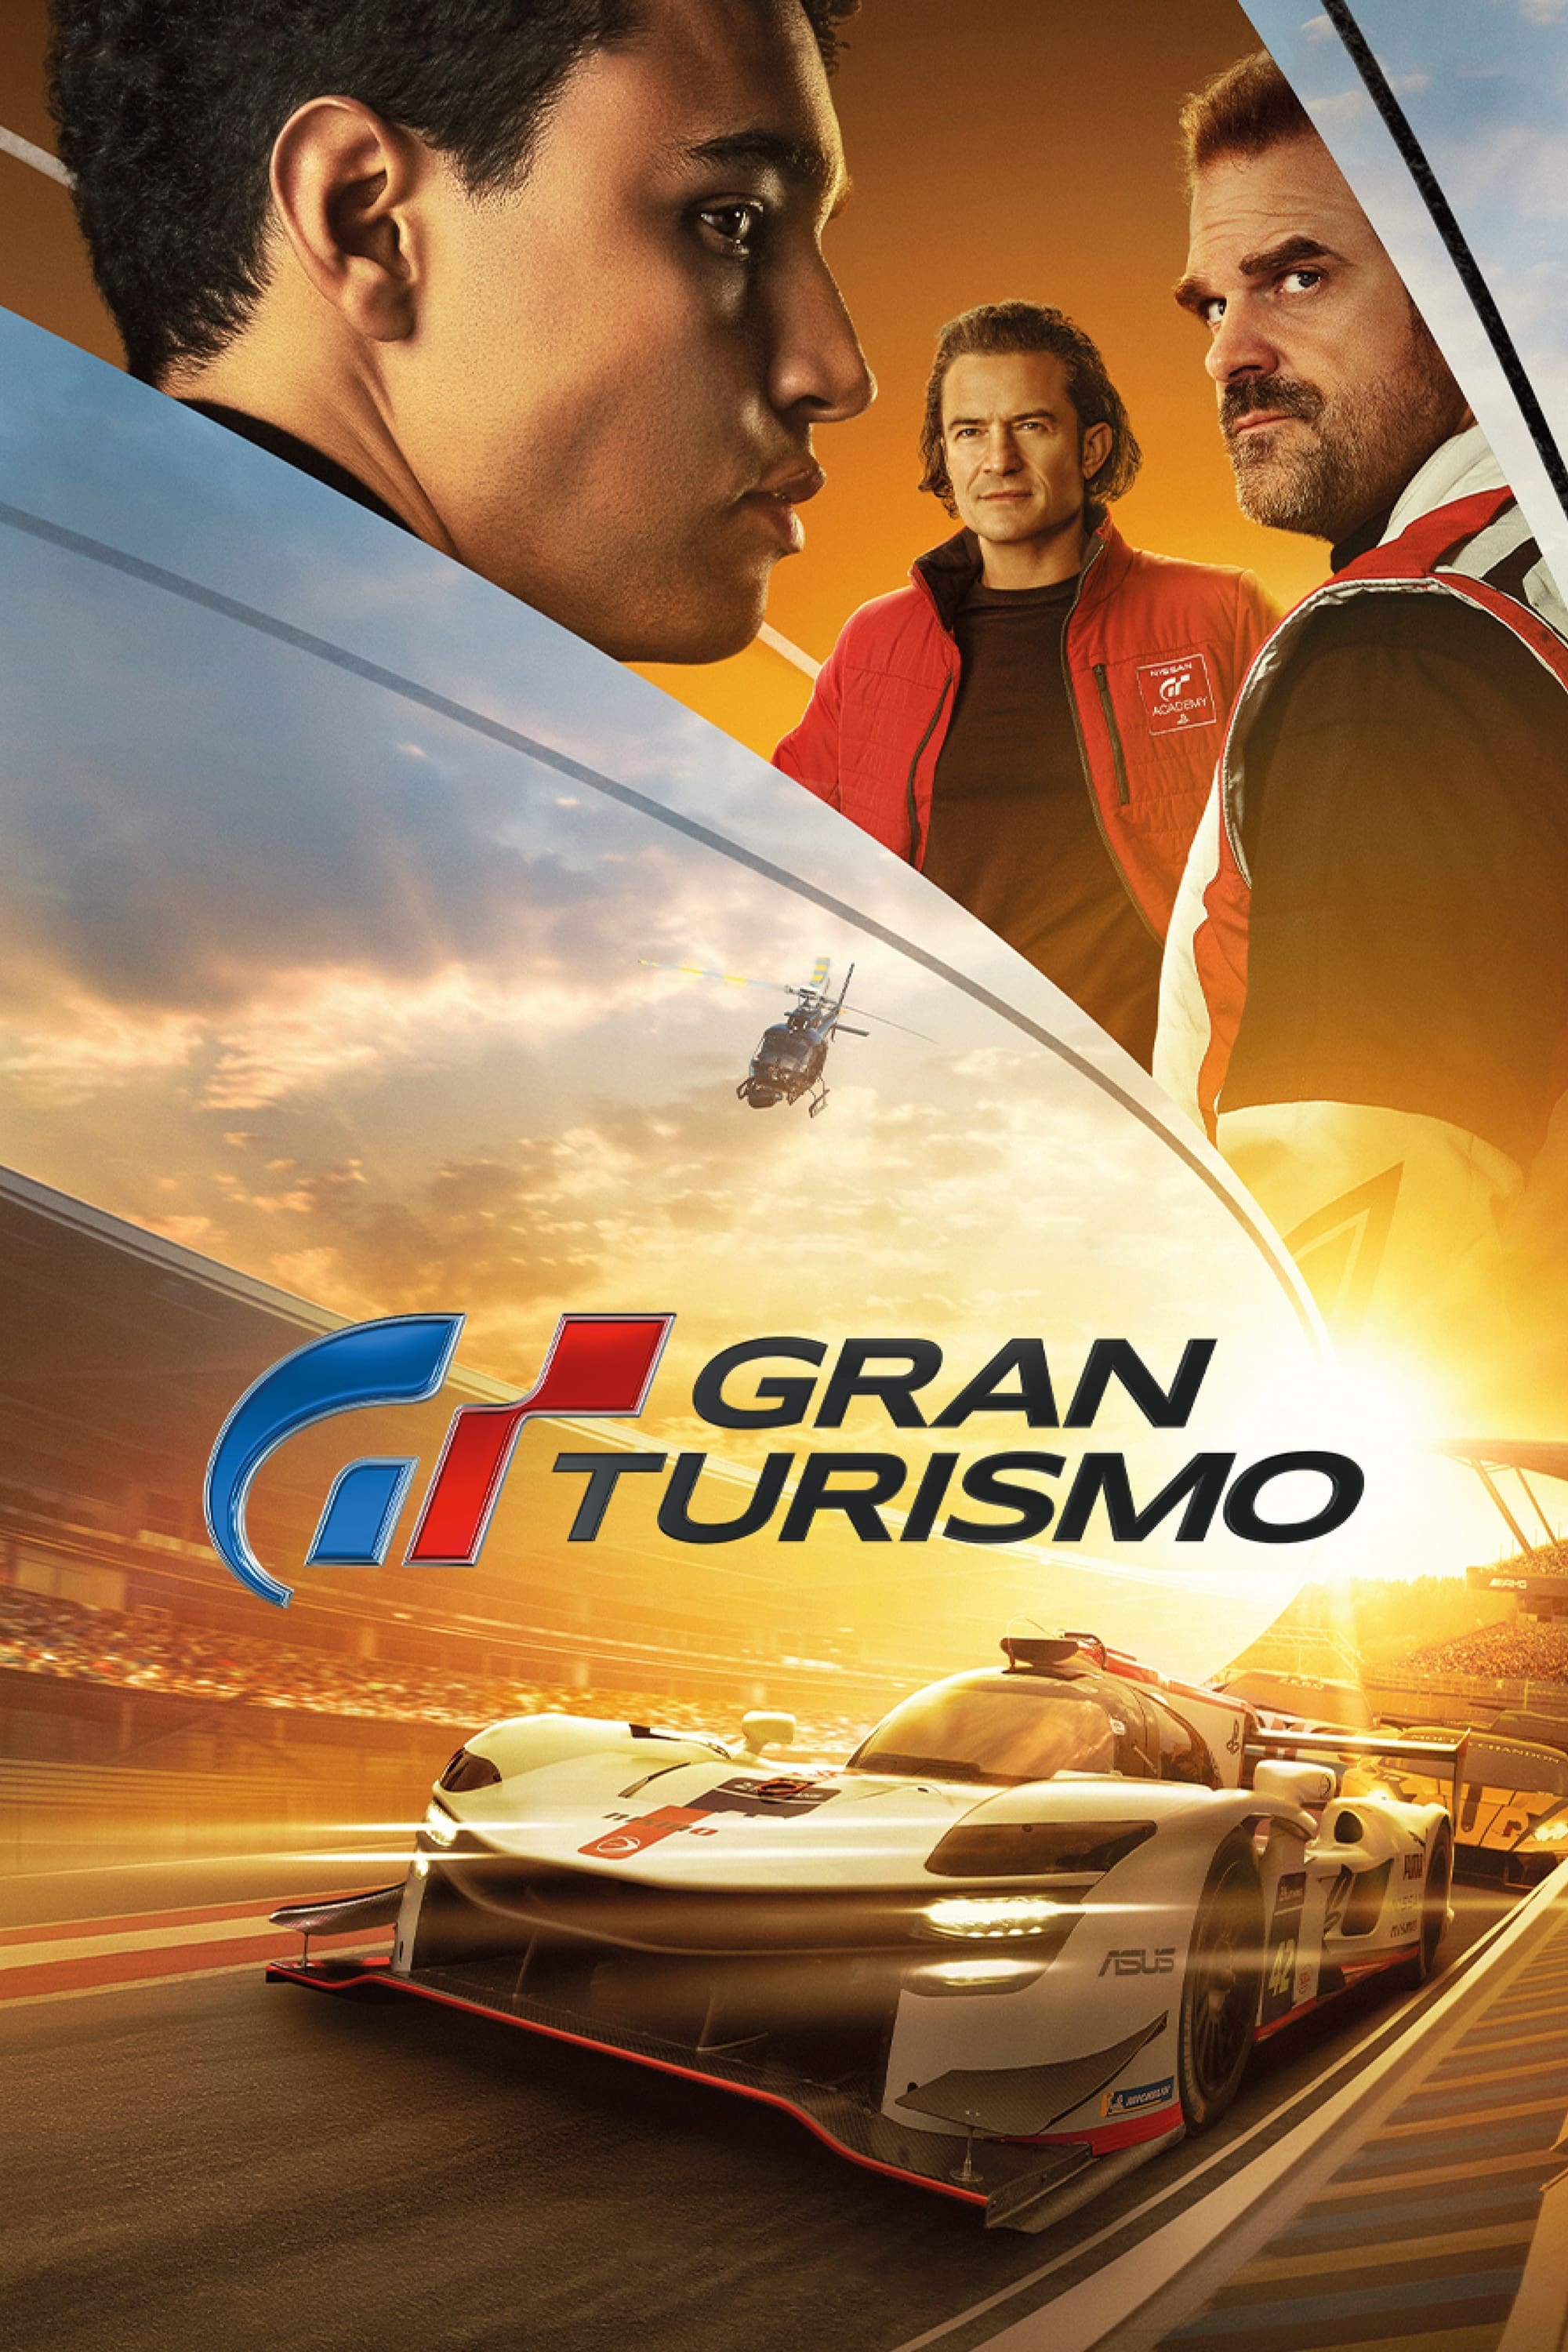 Gran Turismo Intense Scenes